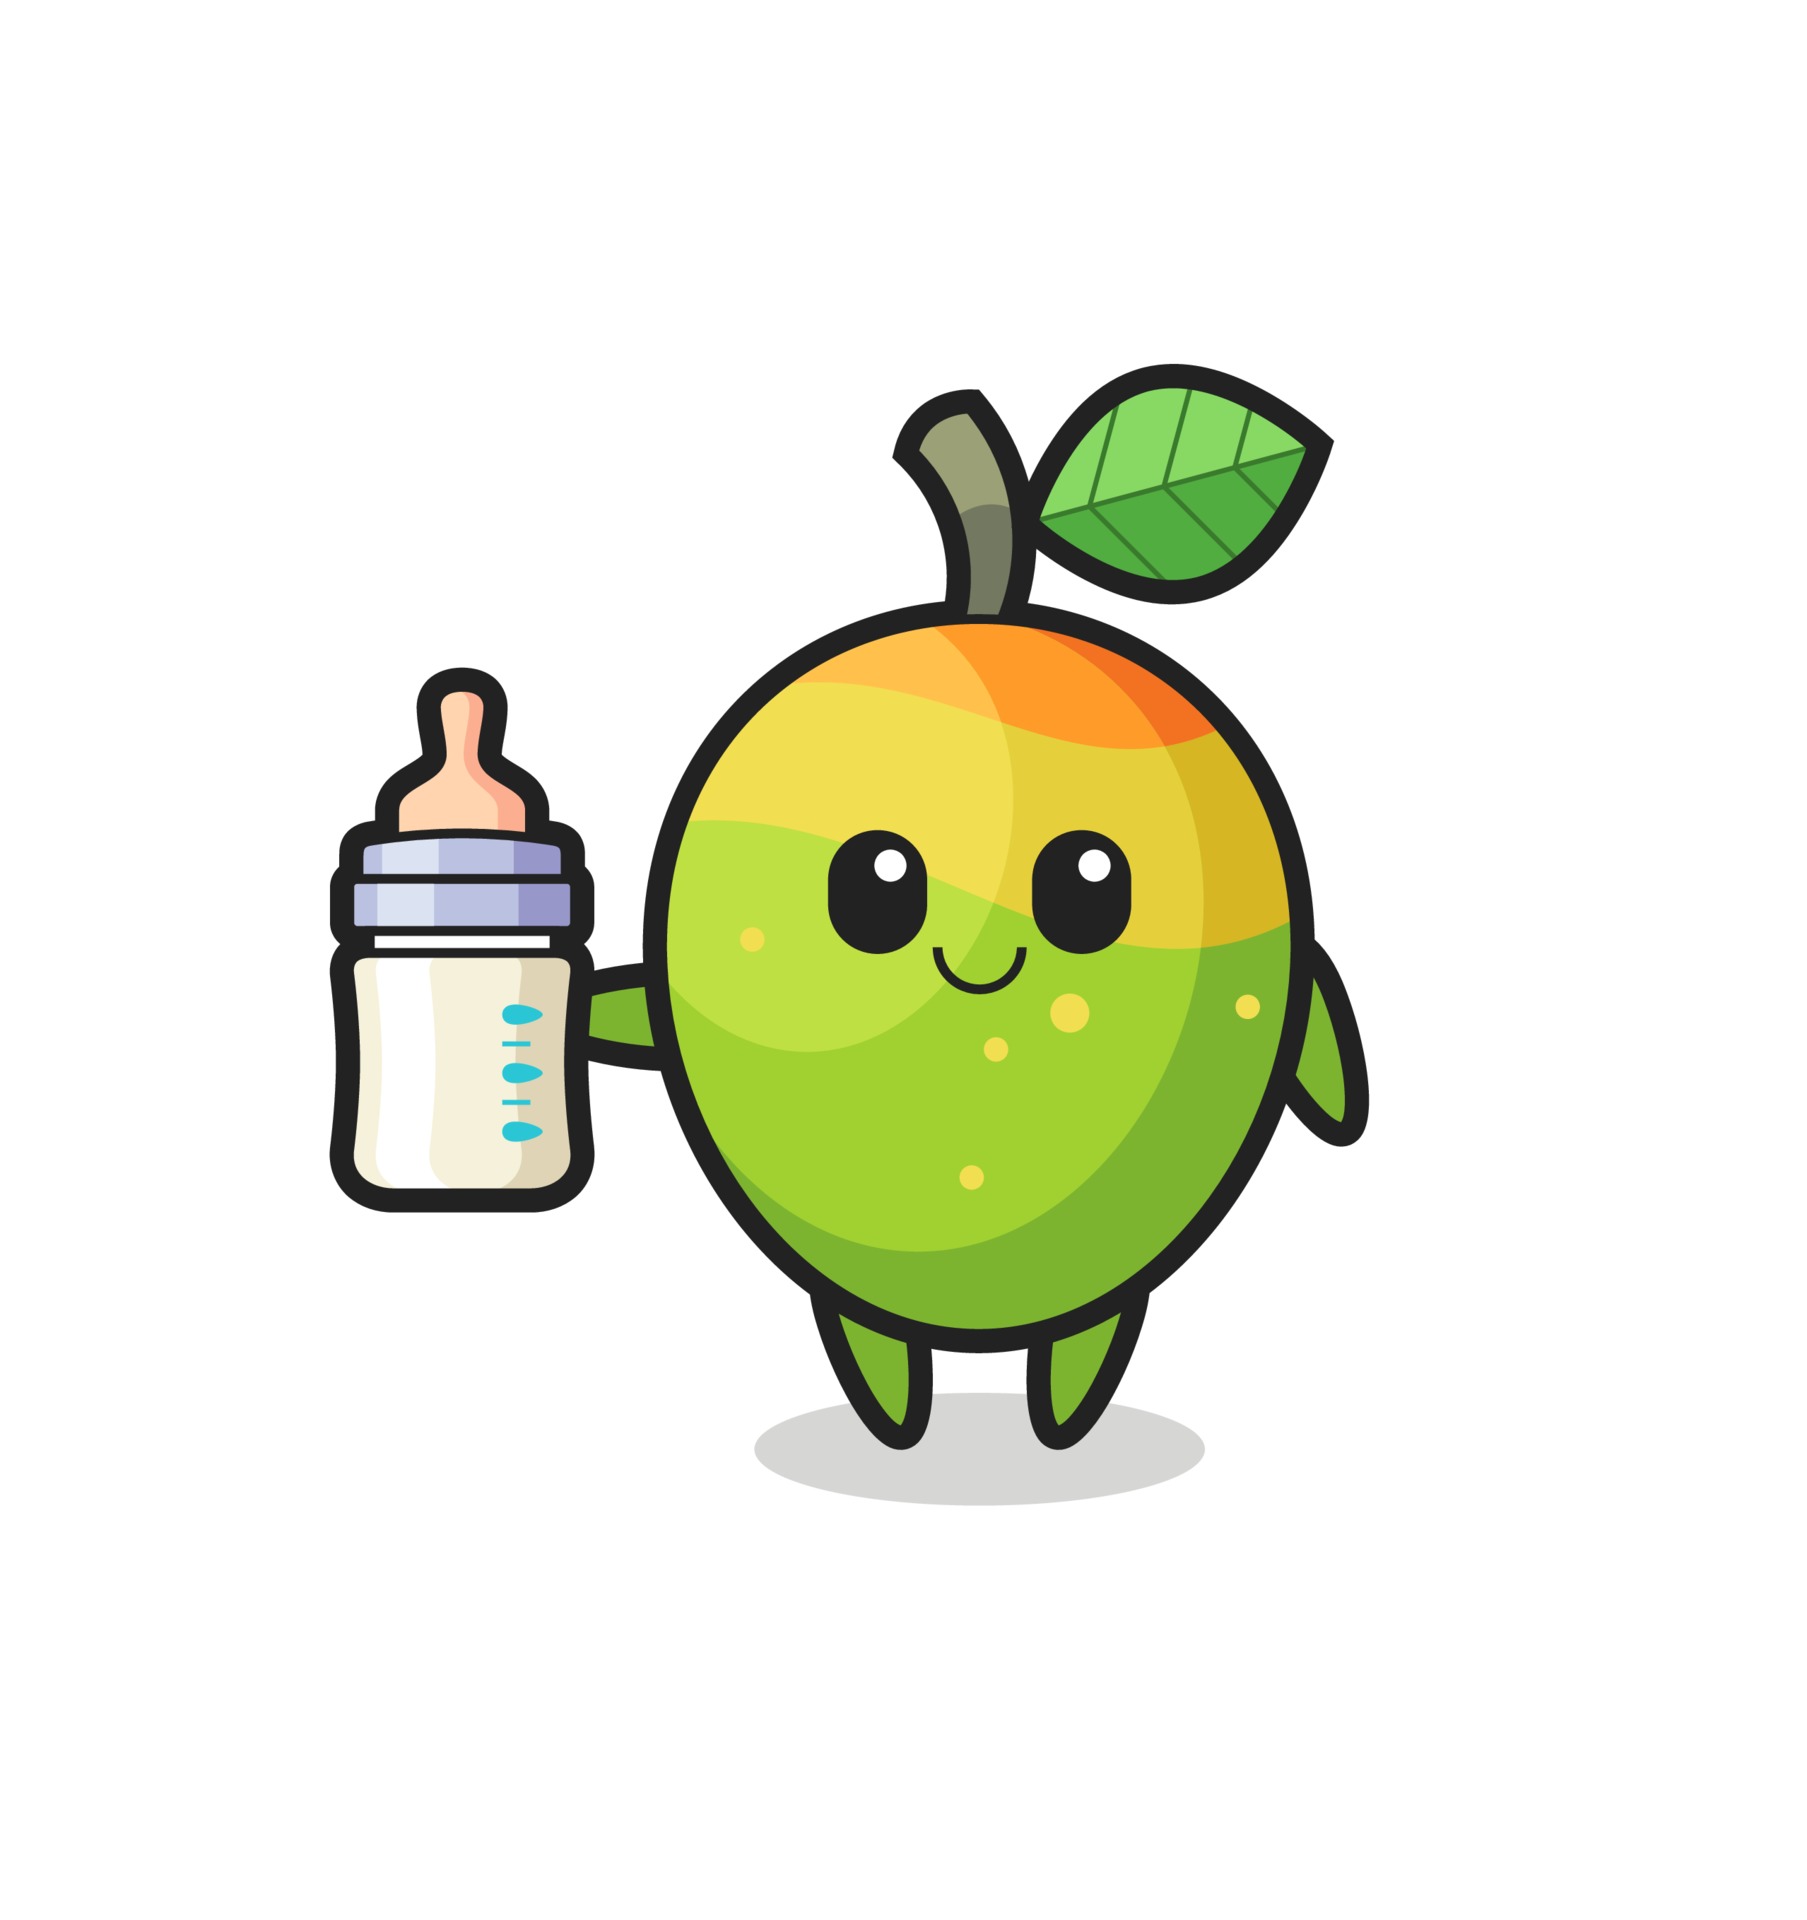 baby mango cartoon character with milk bottle 3458009 Vector Art at Vecteezy